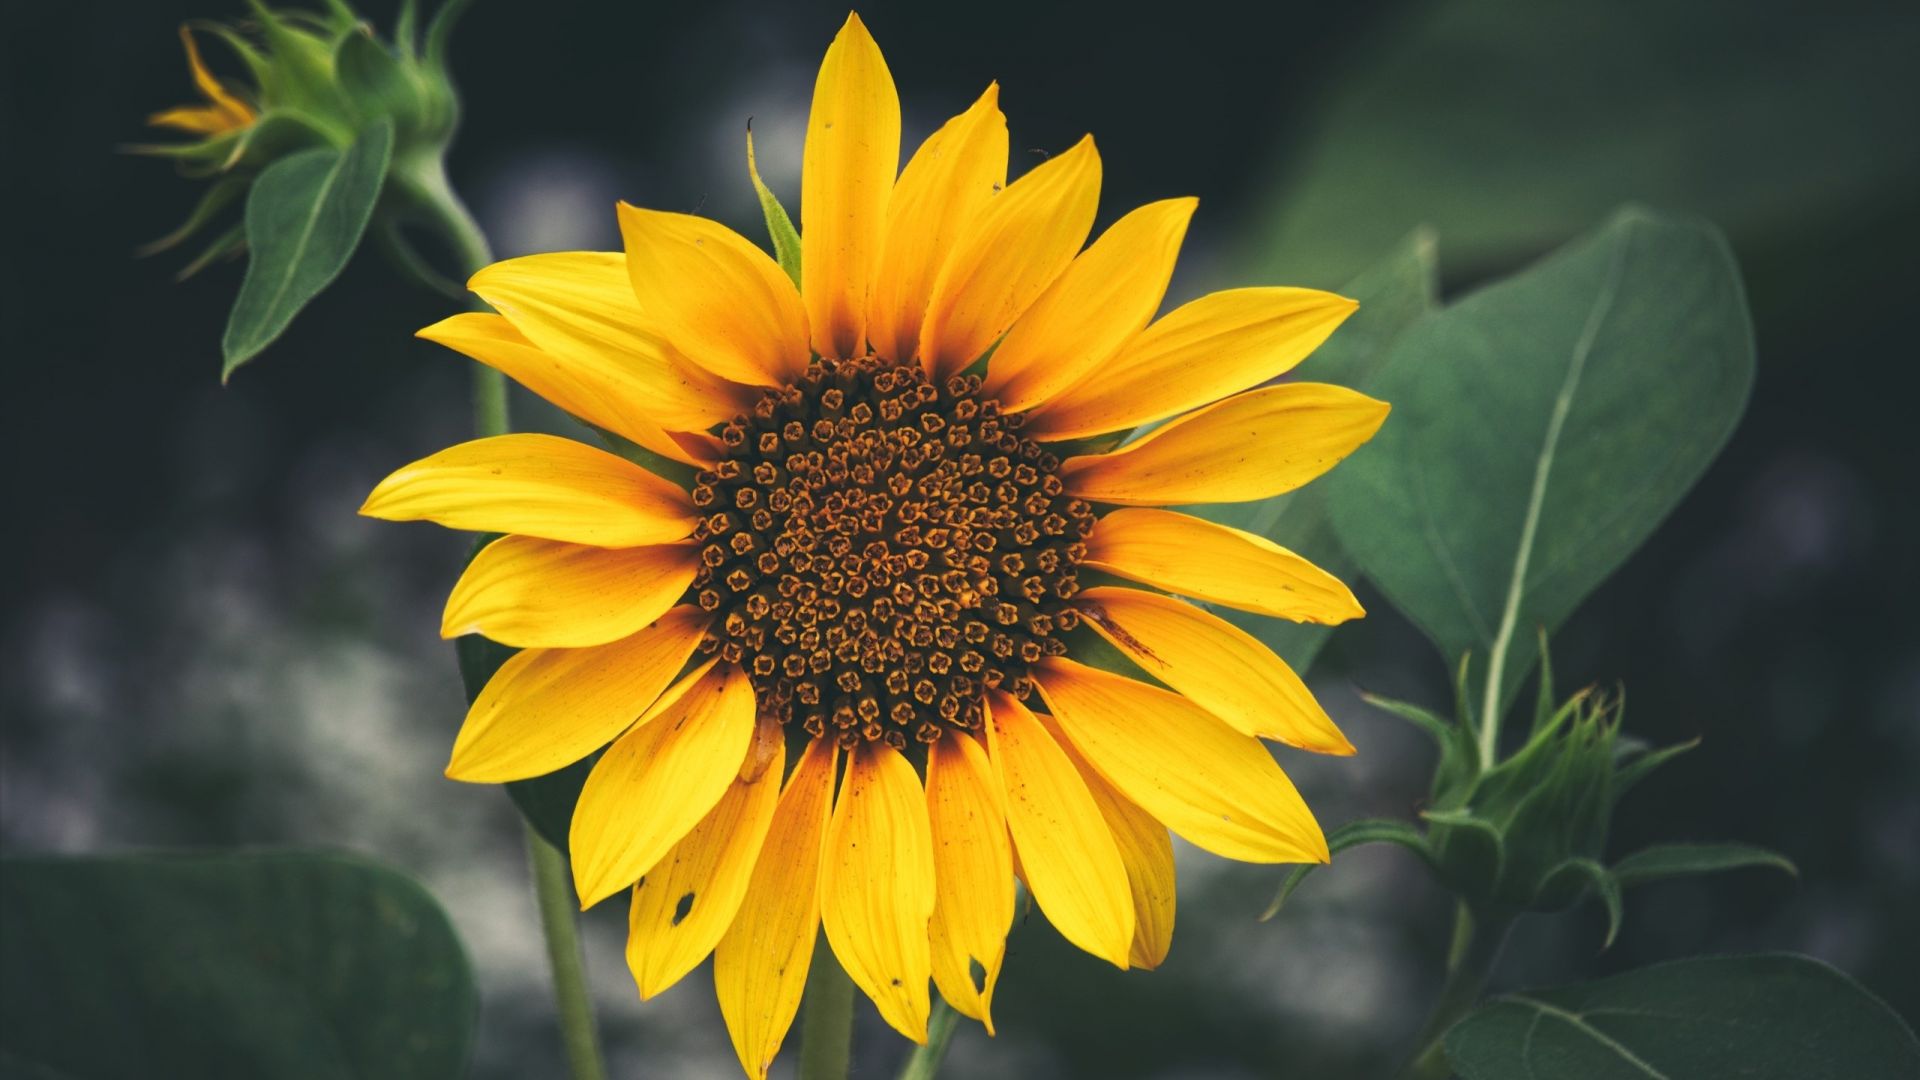 Wallpaper Sunflower of balboa park, closeup